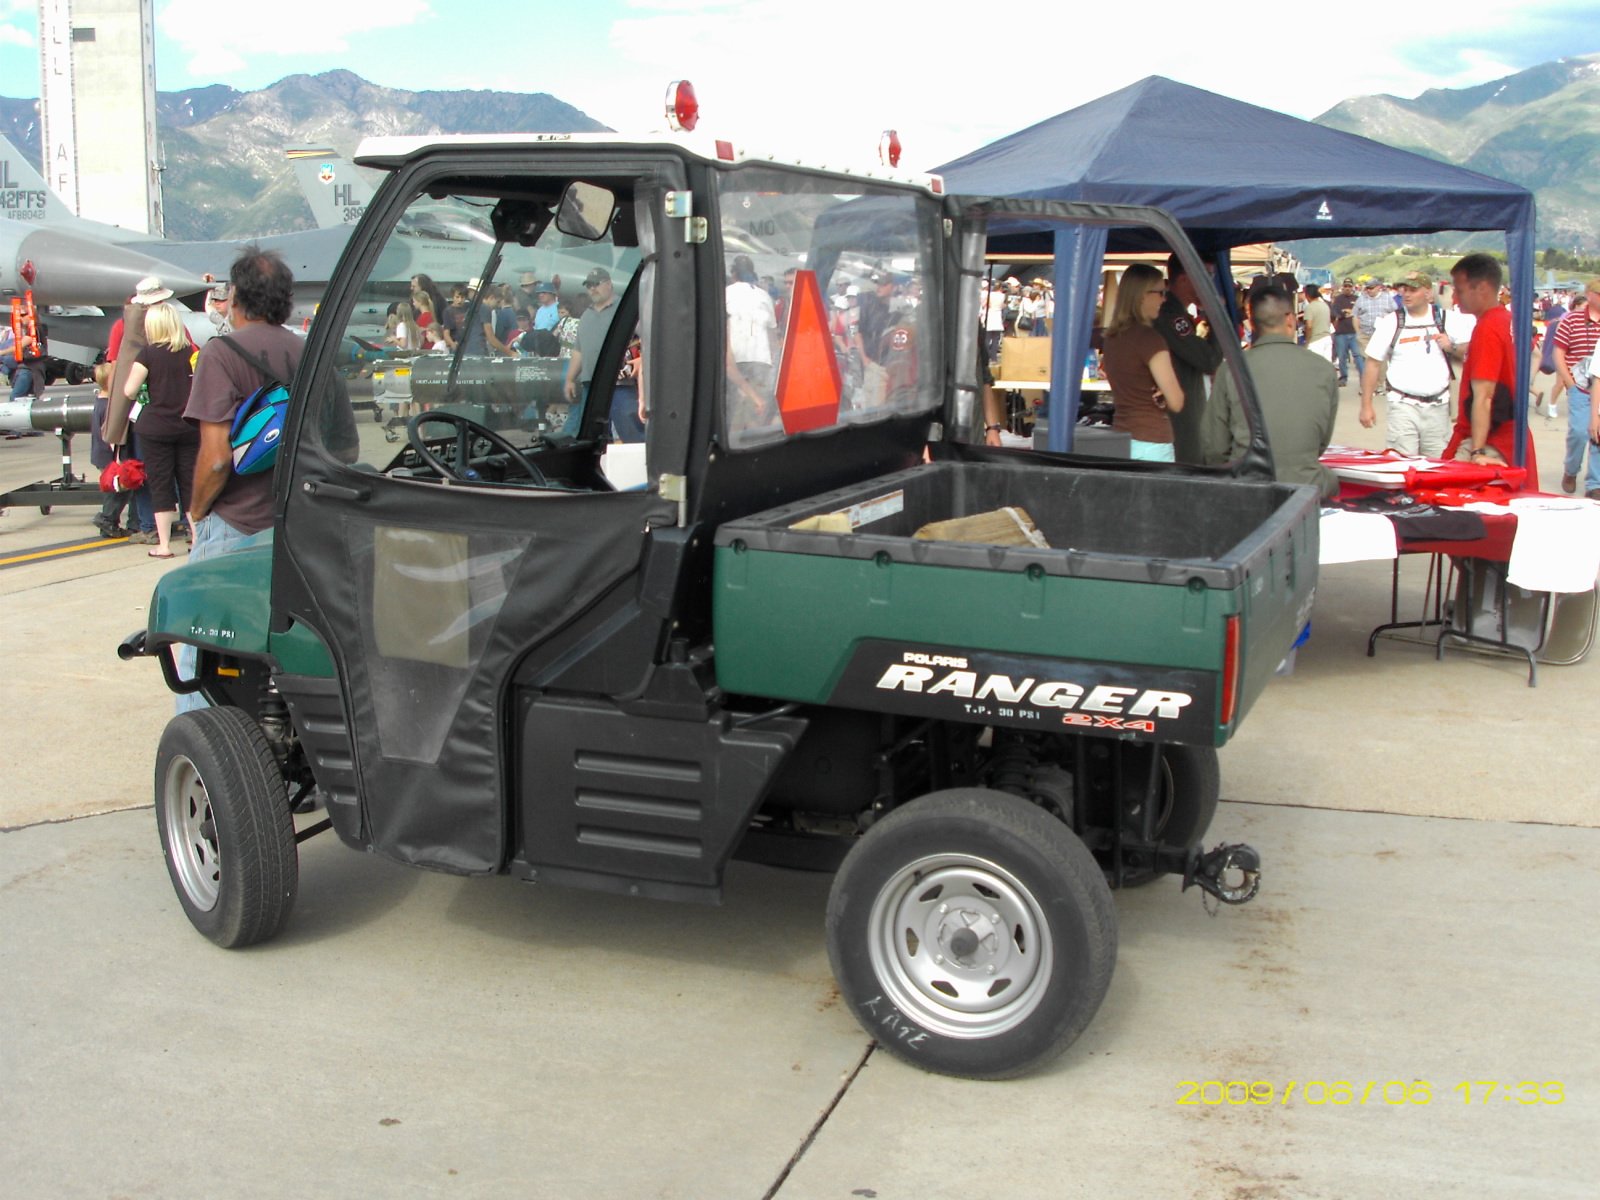 All-terrain vehicle (ATV)